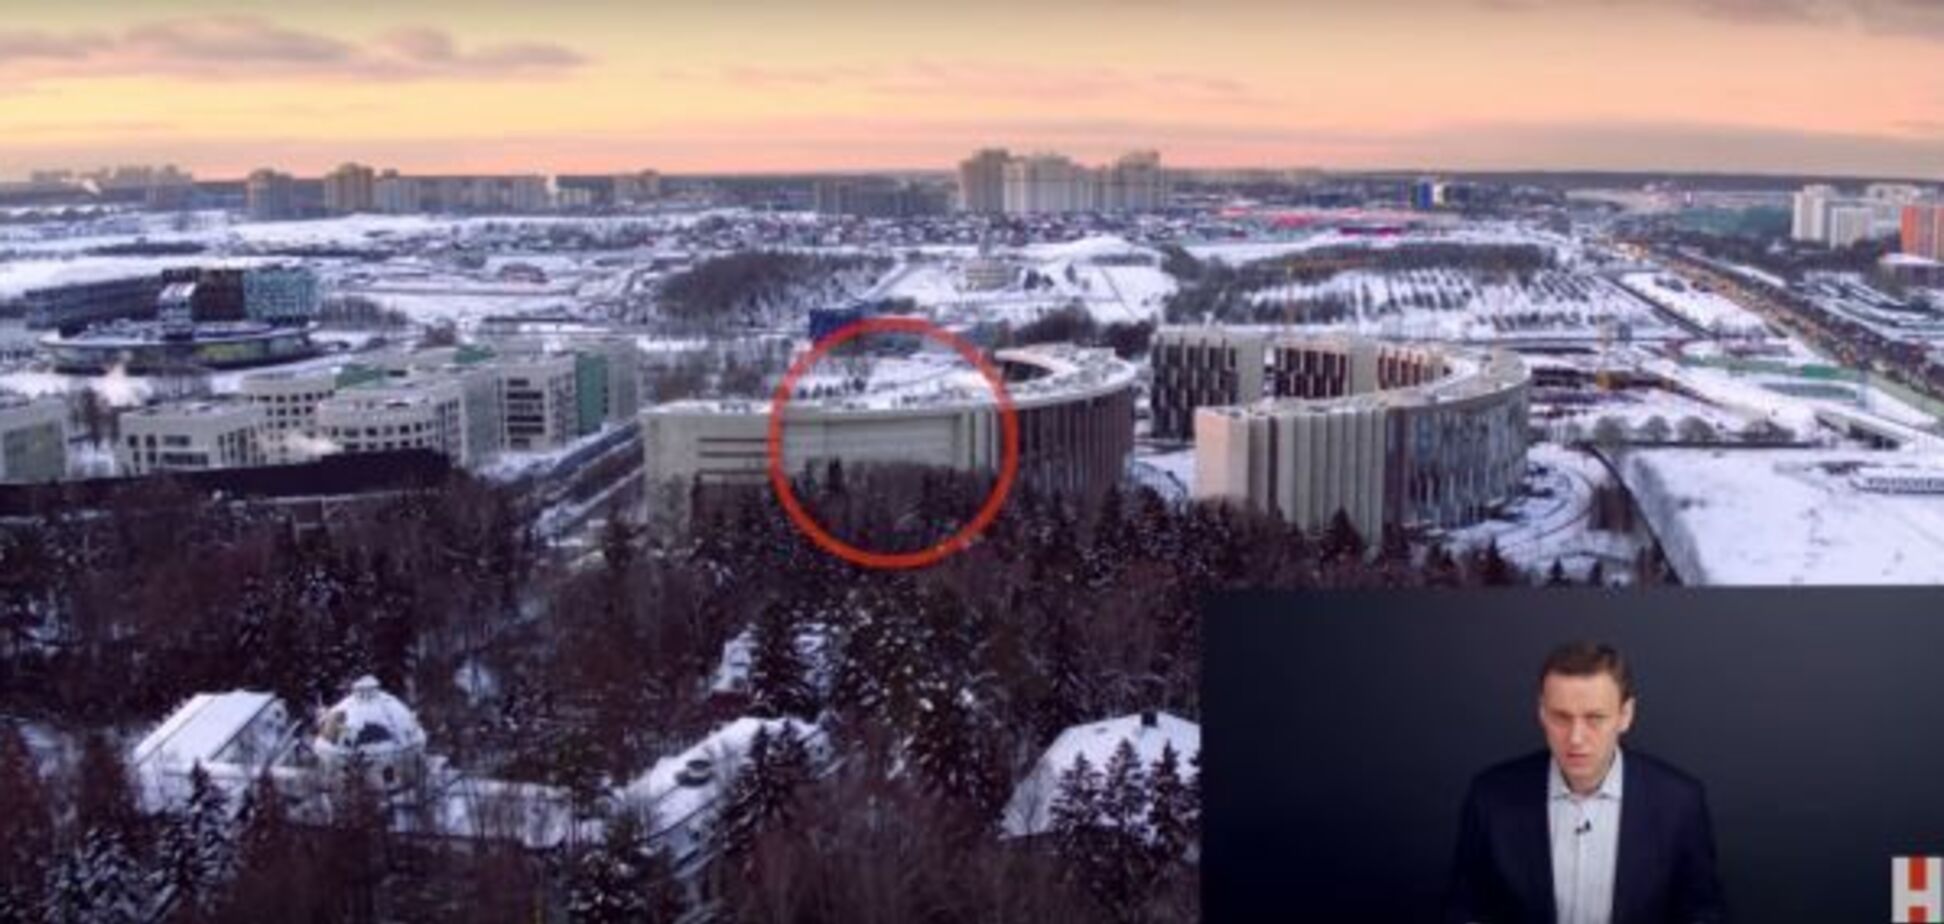 Геть з очей: в Росії людям замурували вікна, щоб сховати дачу зама Медведєва